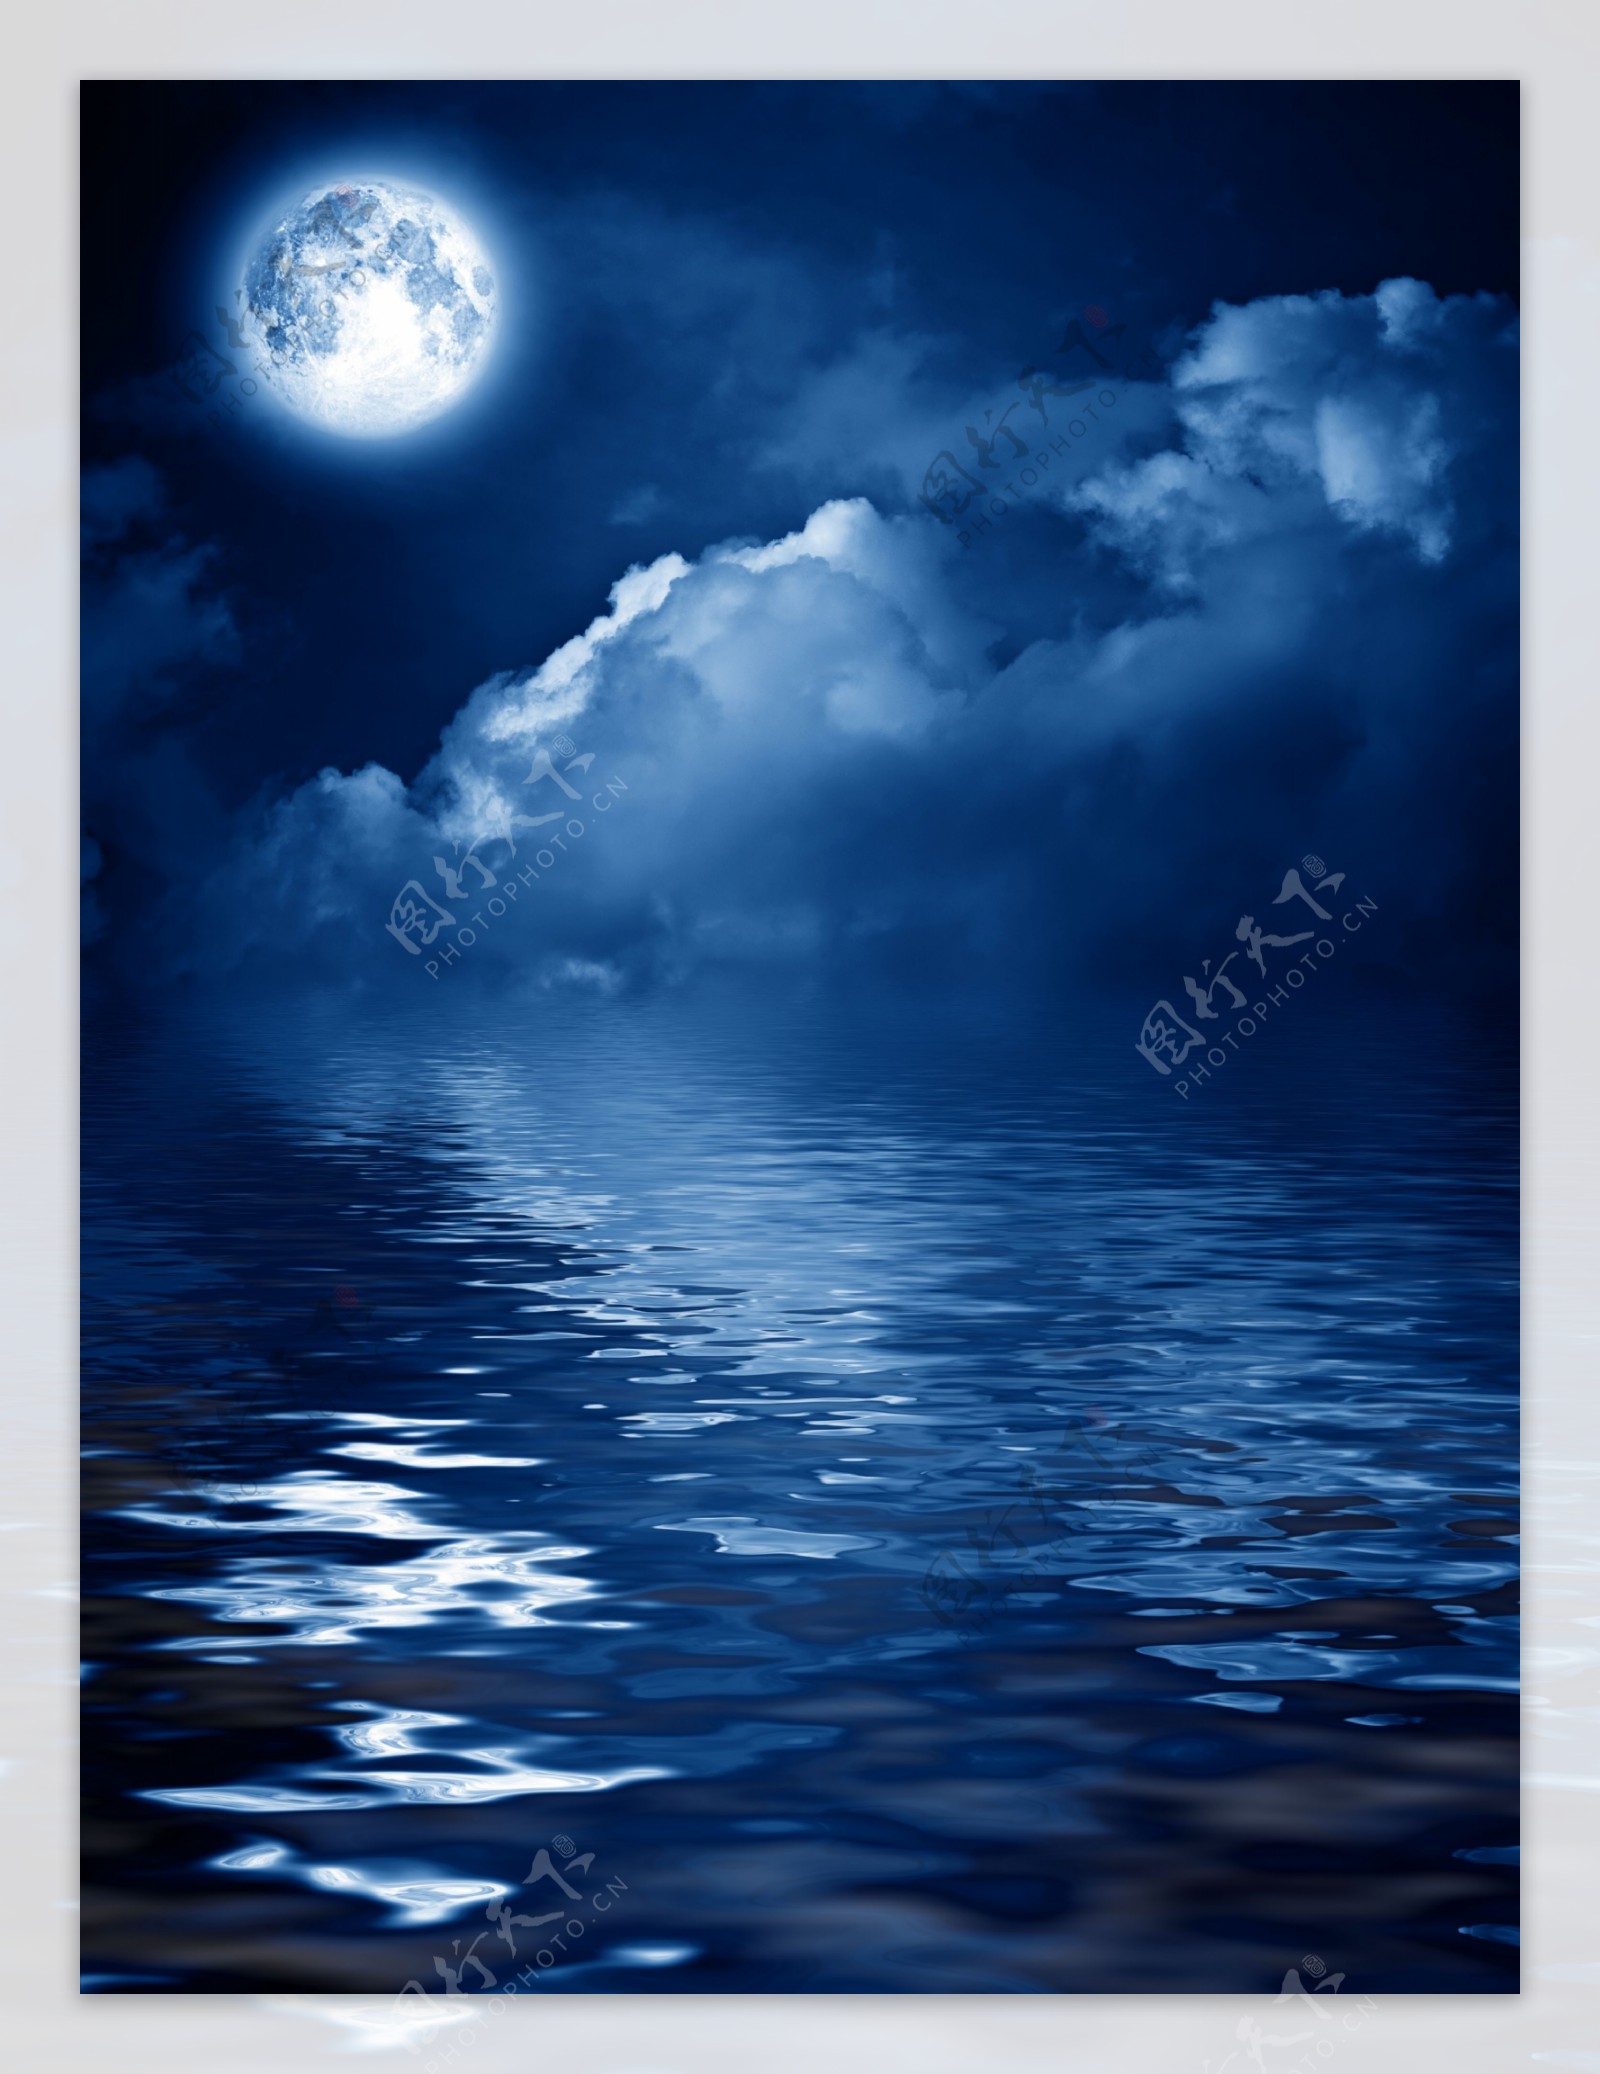 海上明月(风景手机动态壁纸) - 风景手机壁纸下载 - 元气壁纸